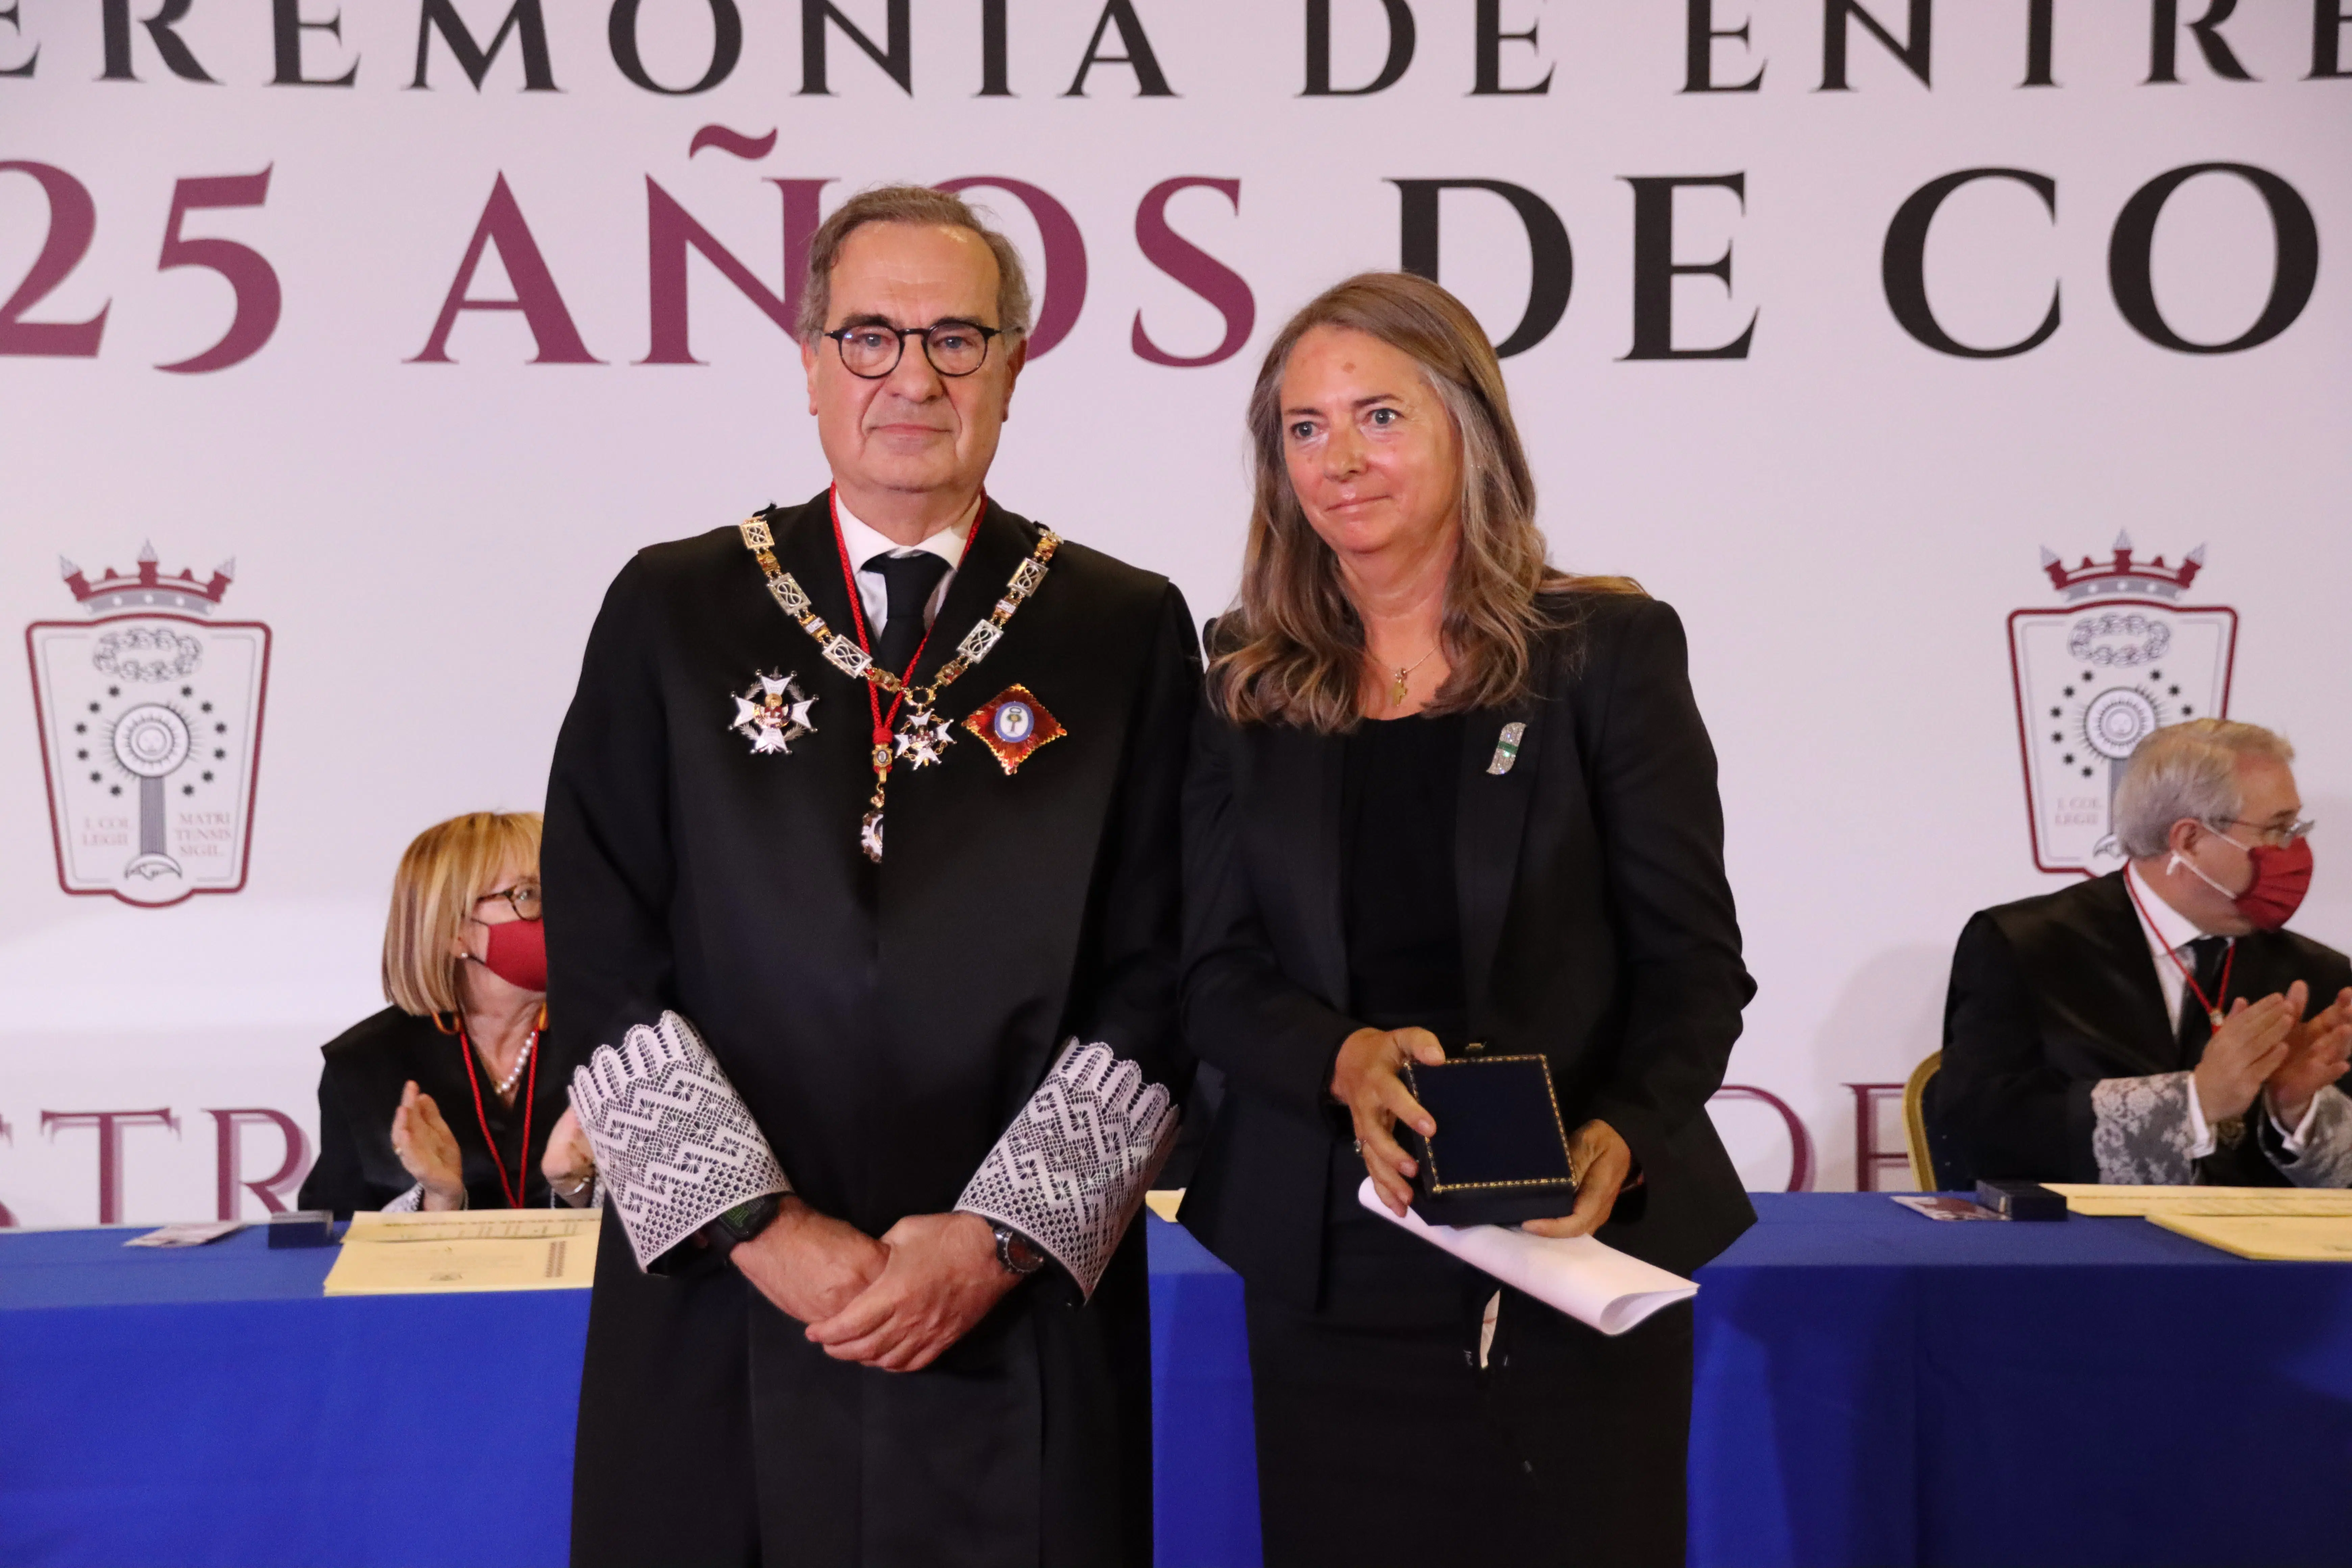 El ICAM homenajea a Jimmy Baker y a Rodrigo Uría, dos «gigantes» de la abogacía de los negocios, con medallas de honor a título póstumo